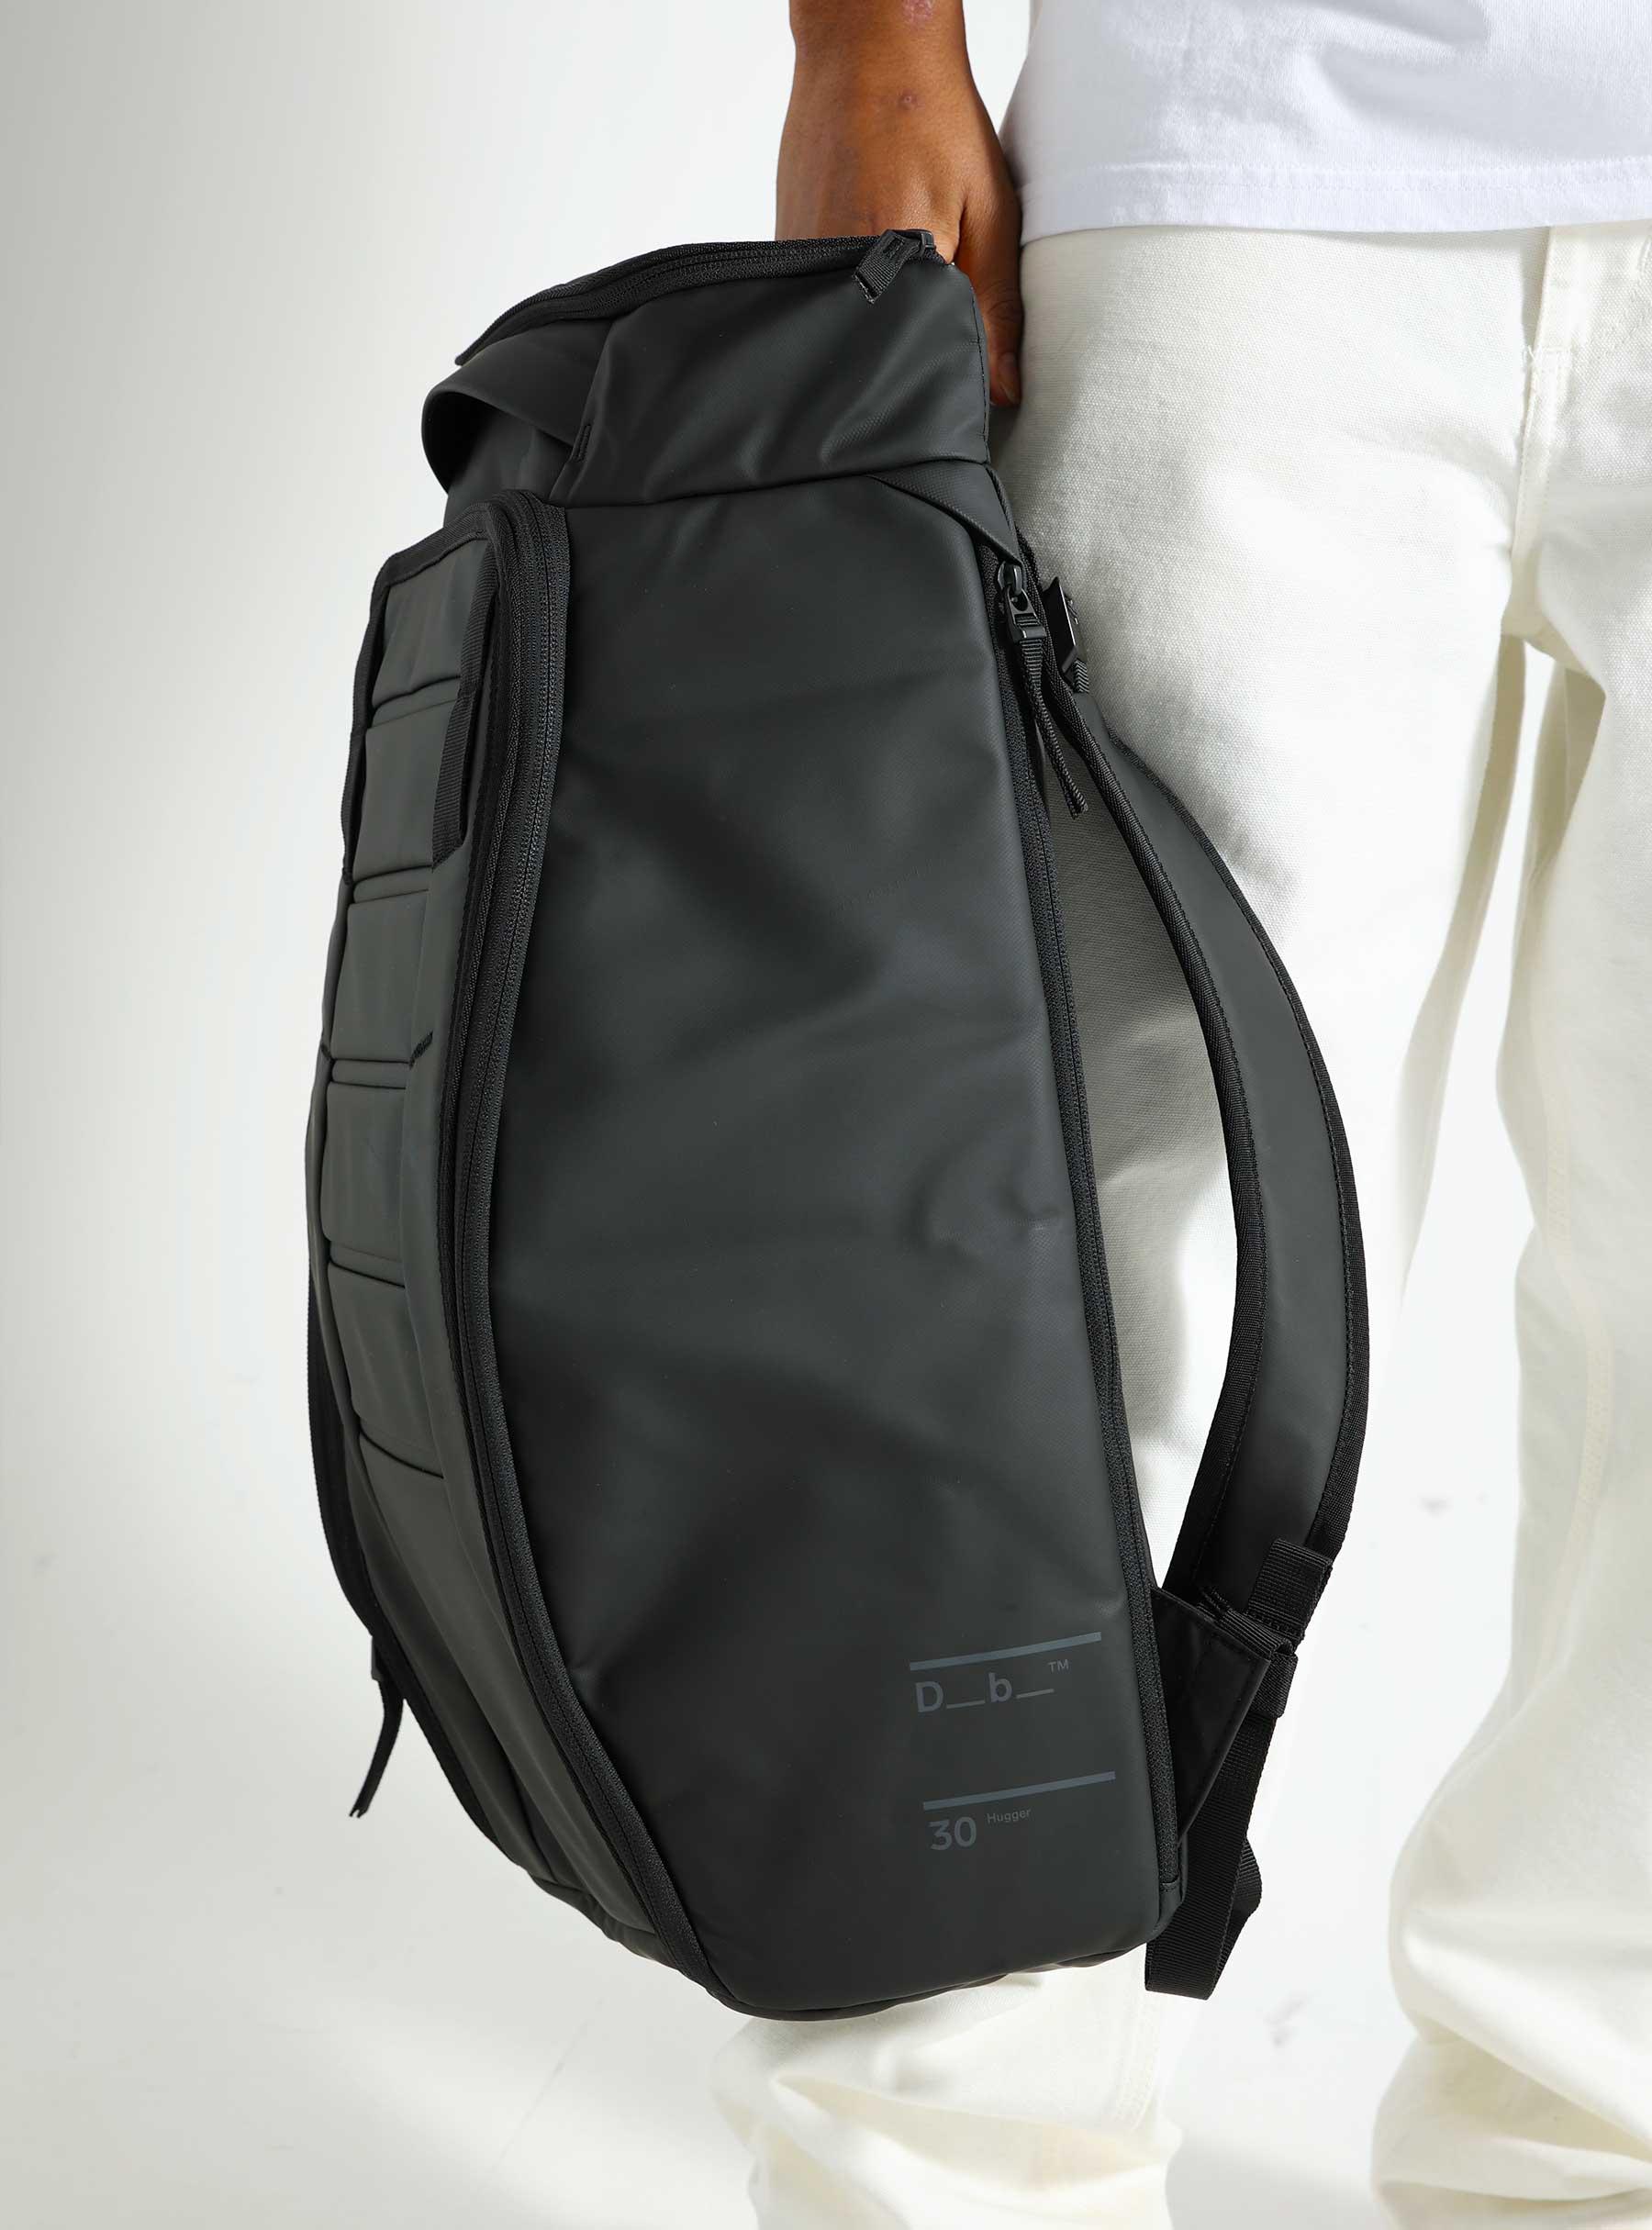 Hugger Backpack 30L Black Out 1000176004901